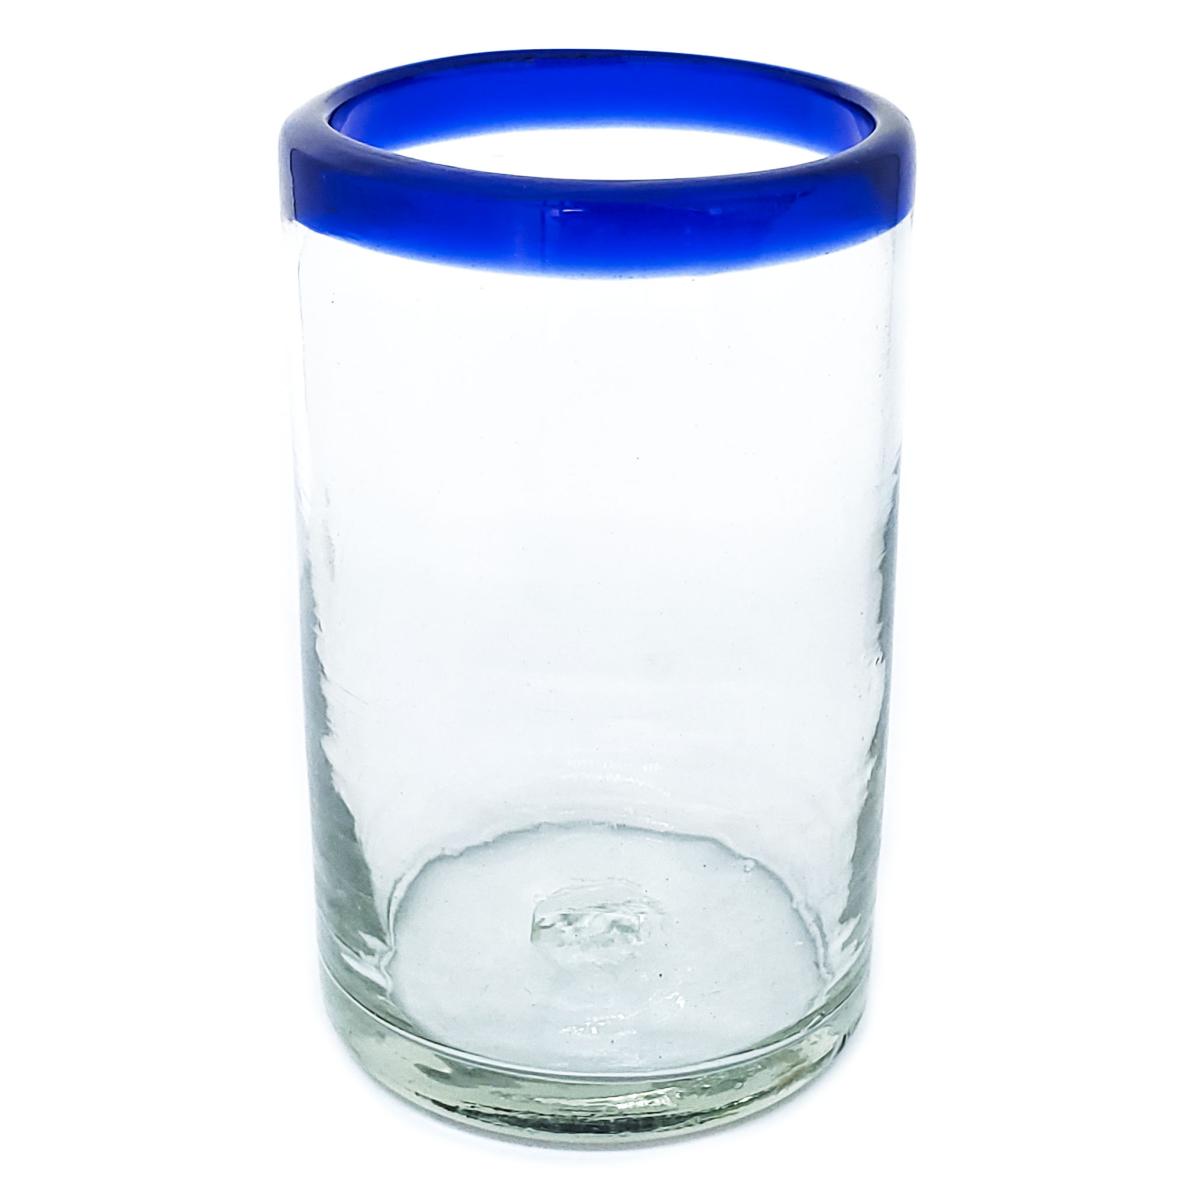 Ofertas / vasos grandes con borde azul cobalto / stos artesanales vasos le darn un toque clsico a su bebida favorita.